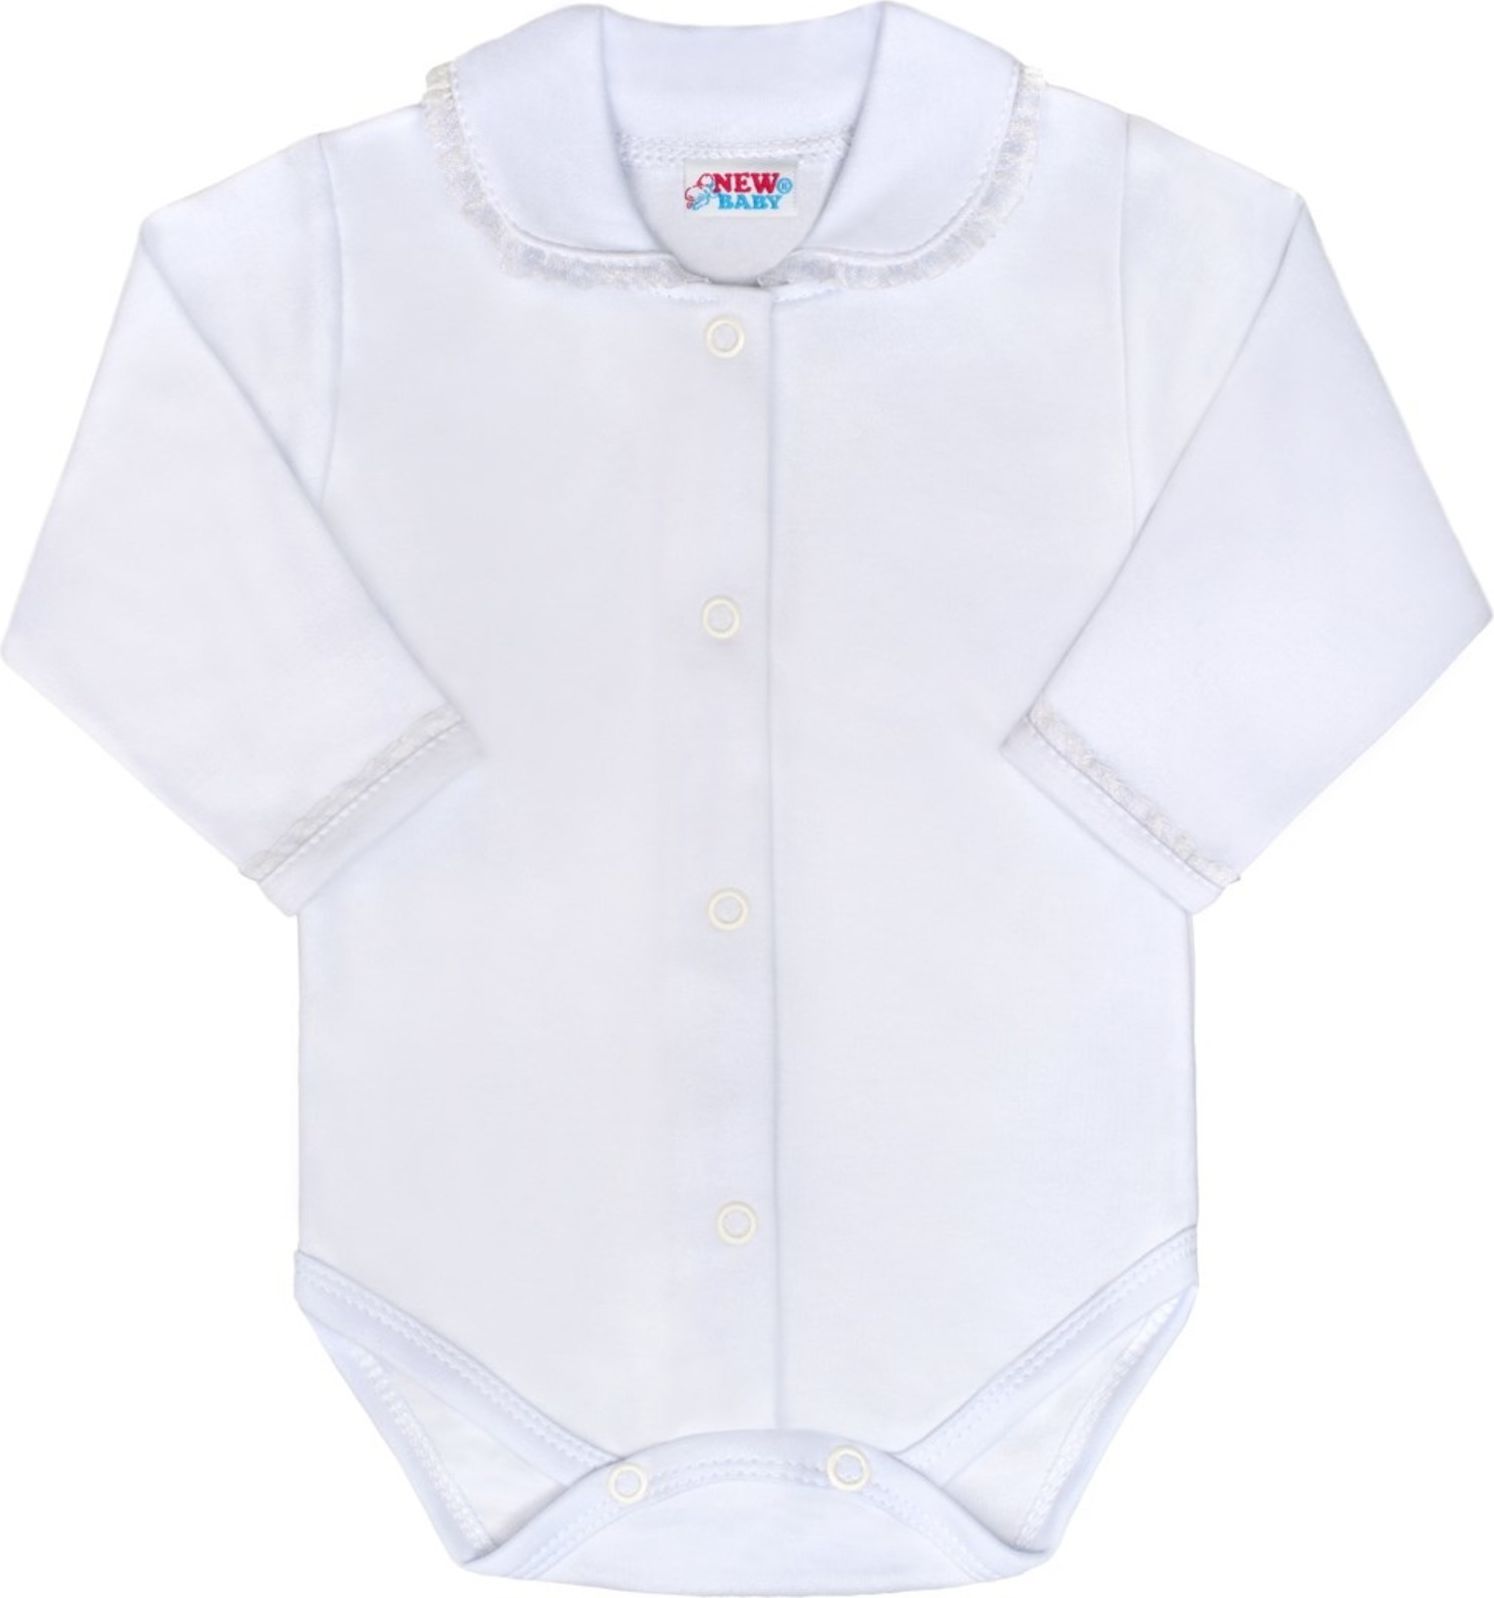 Luxusní bavlněné celorozepínací kojenecké body New Baby Princess bílé - 68 (4-6m) - obrázek 1